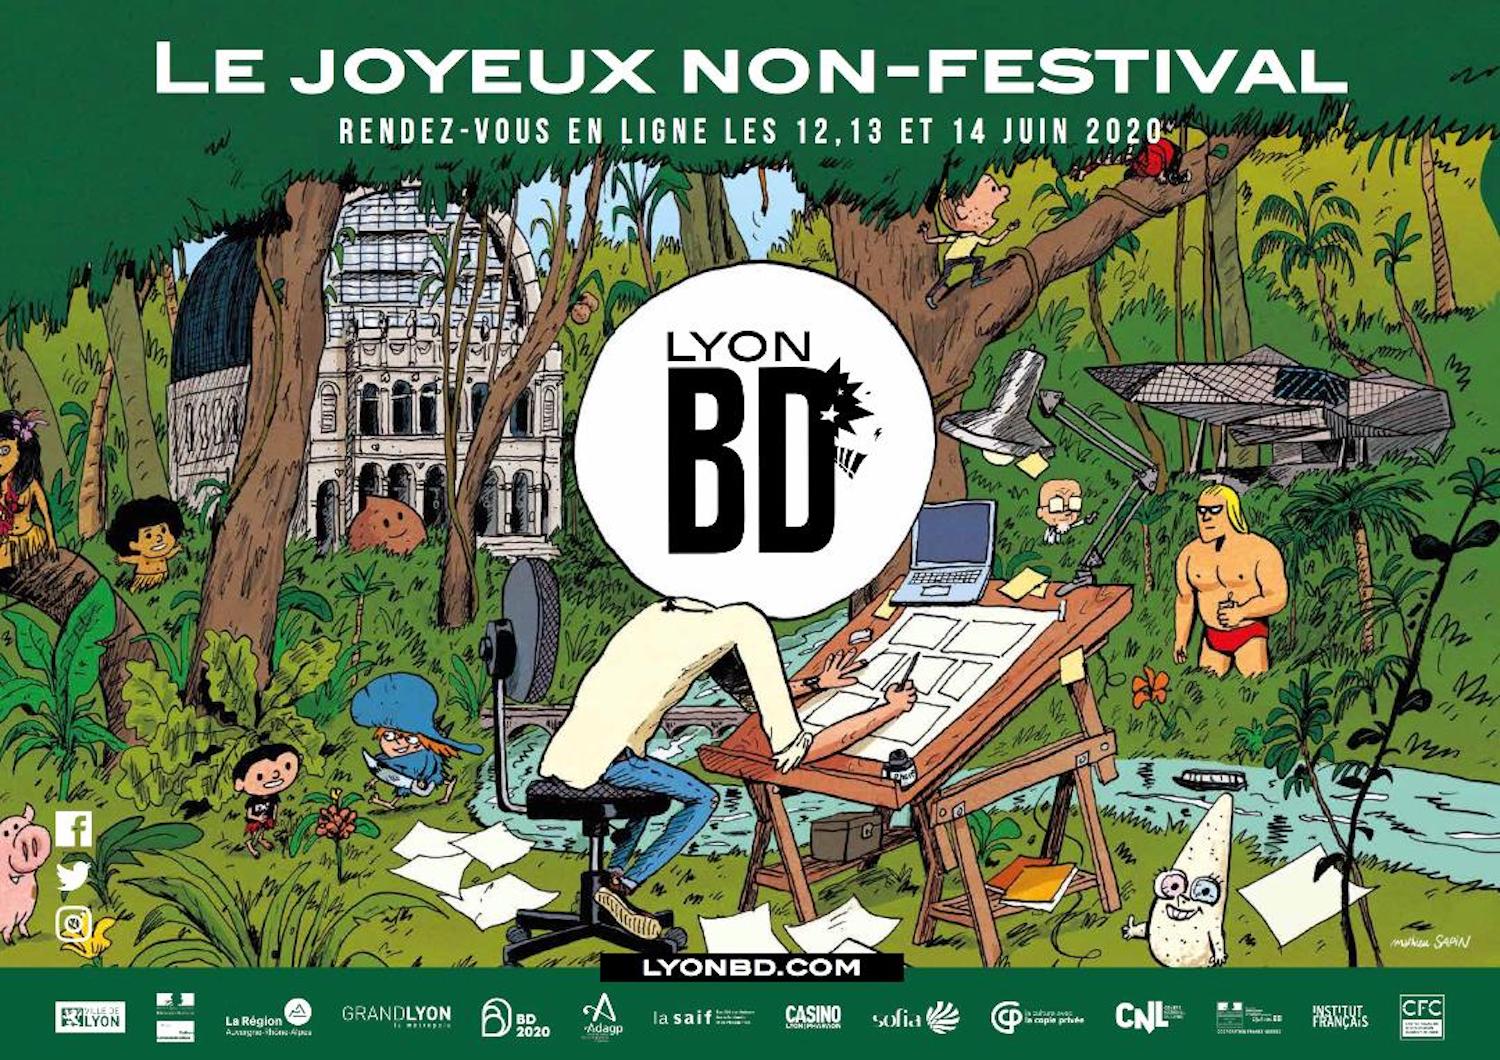 Le non-festival LyonBD